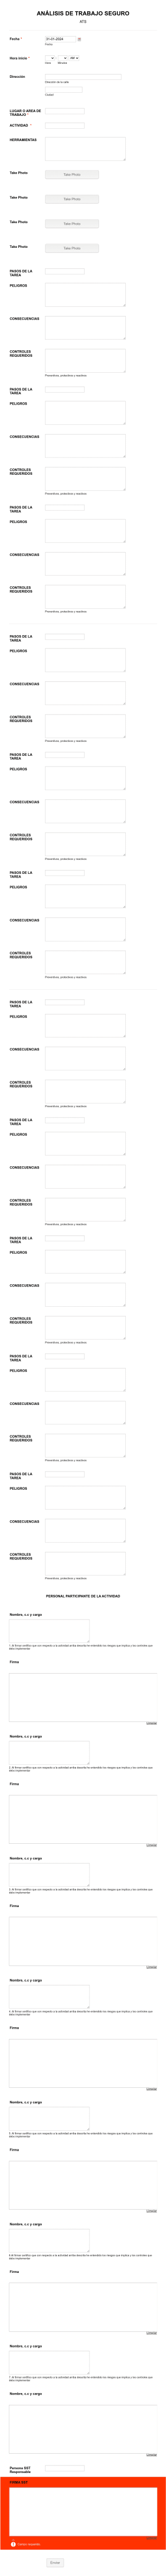 ANÁLISIS DE TRABAJO SEGURO (ATS) Form Template